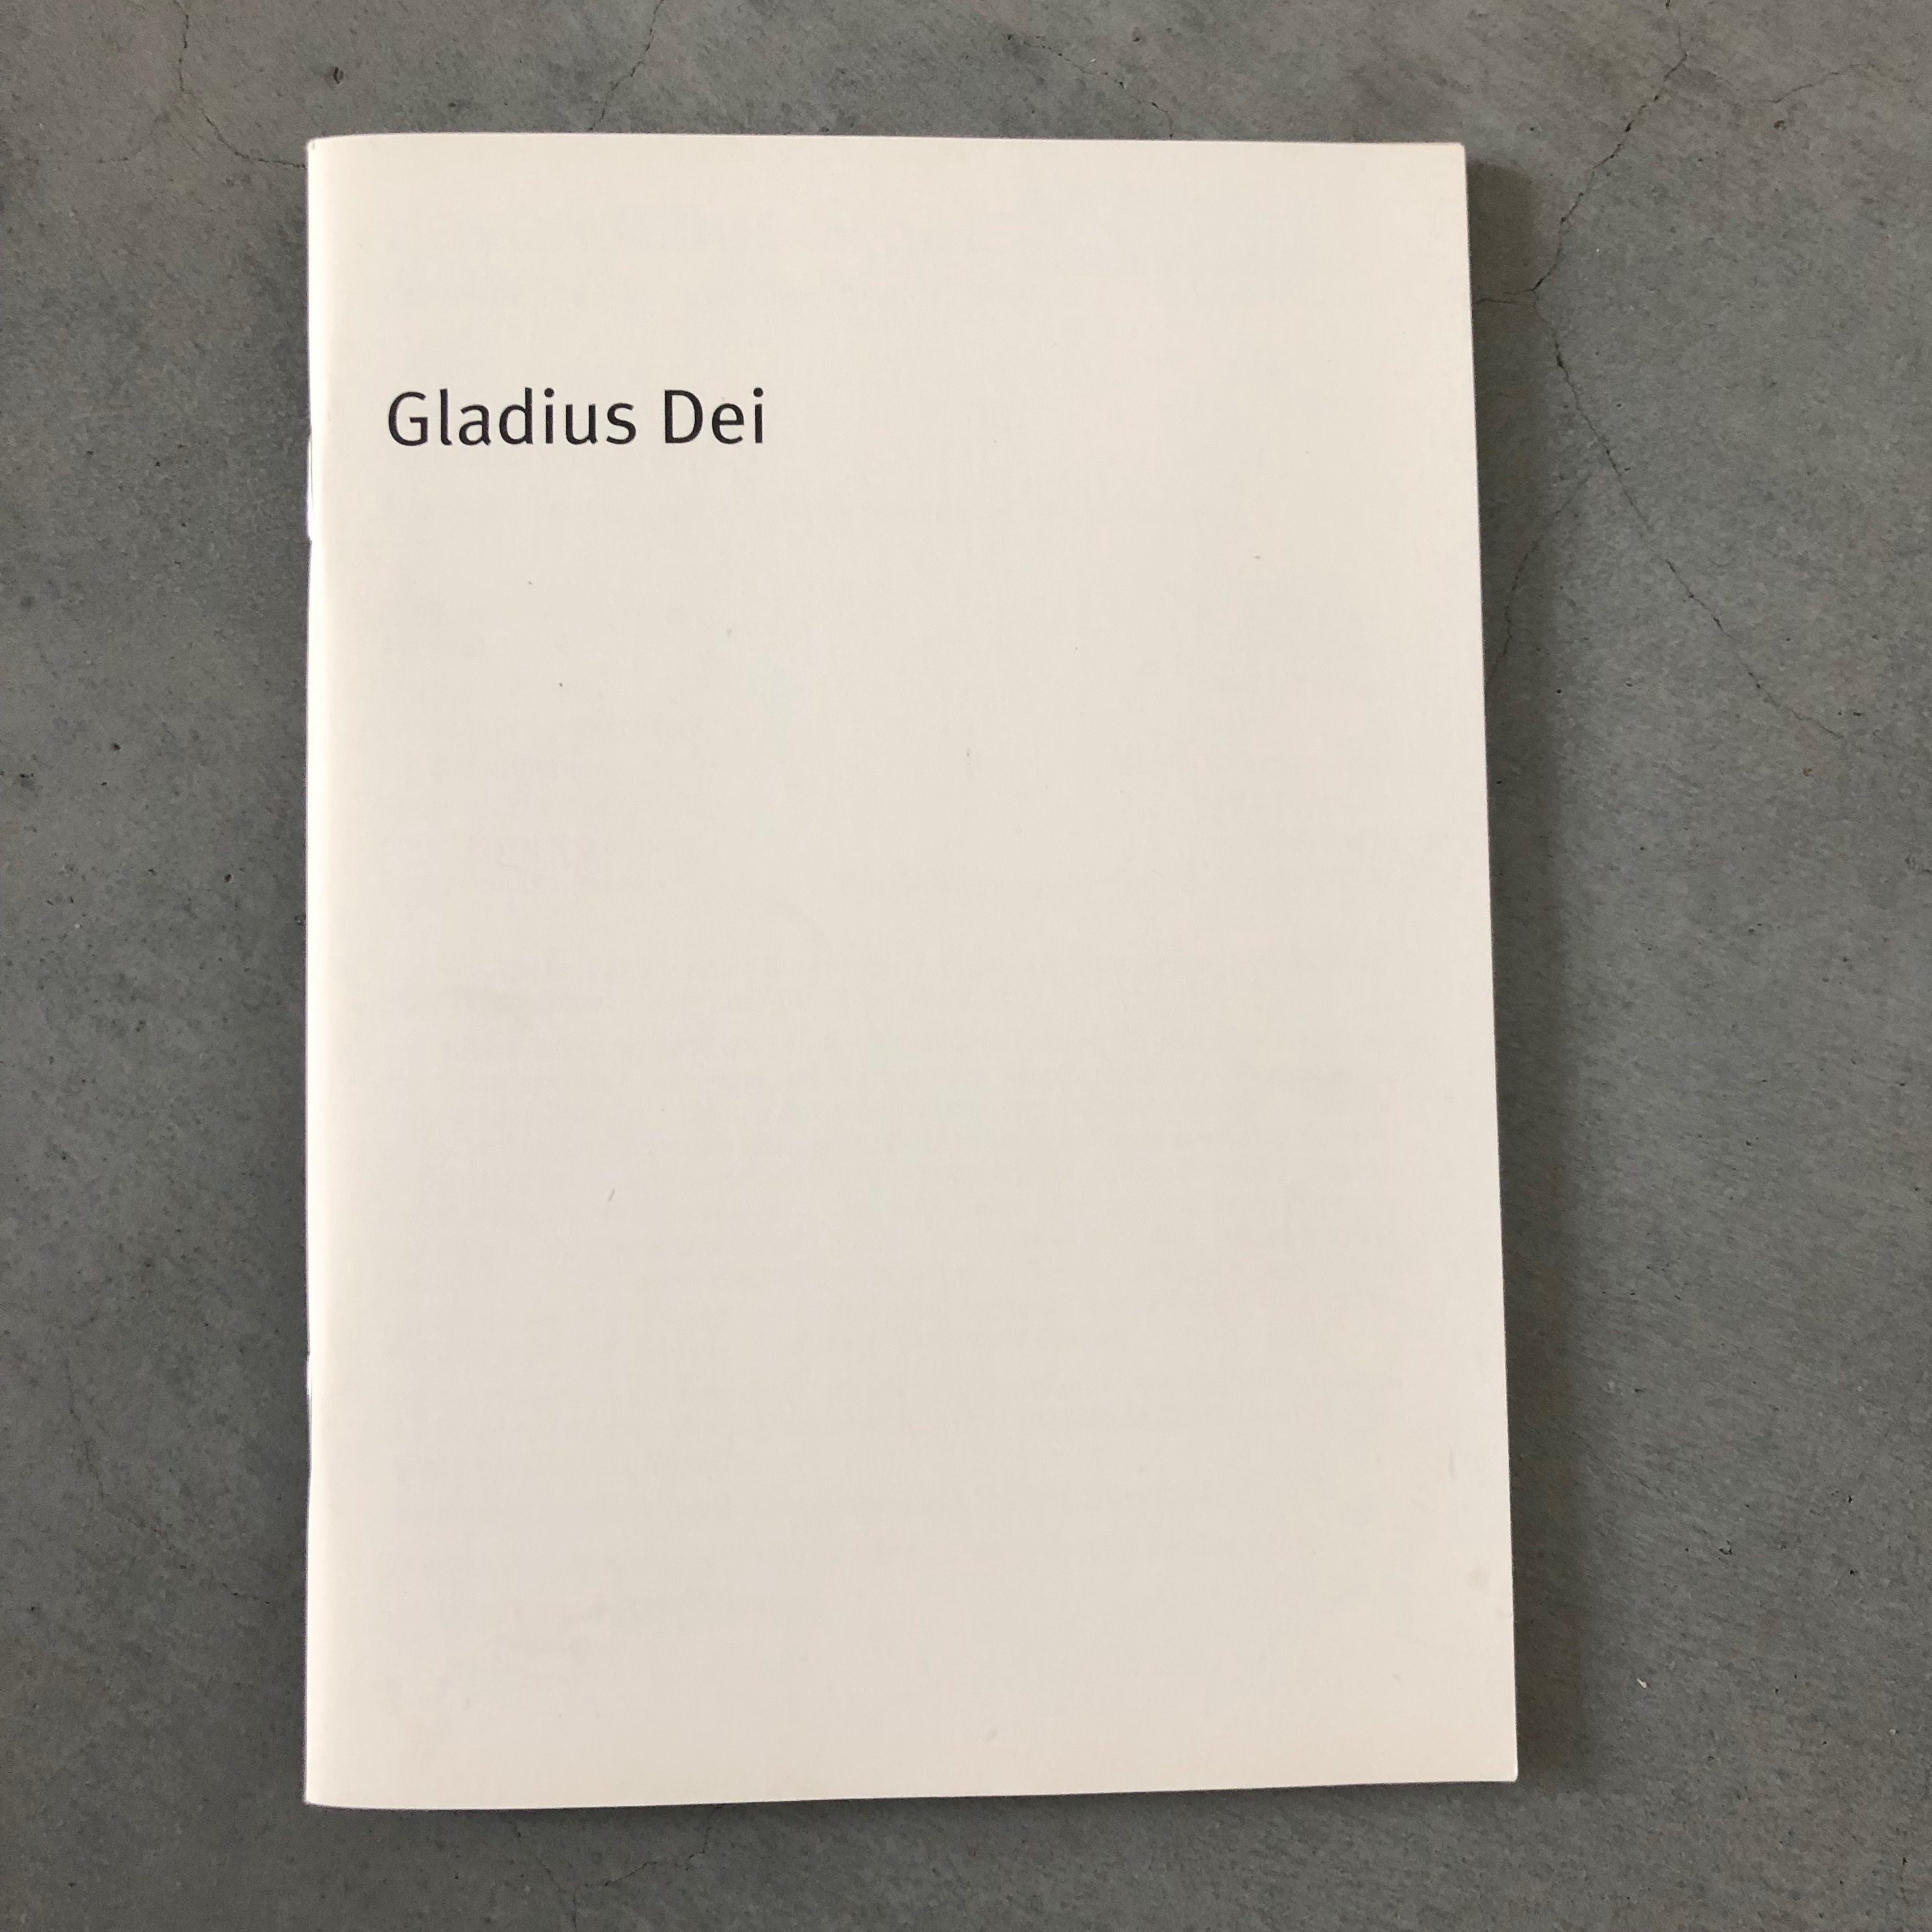 Gladius Dei